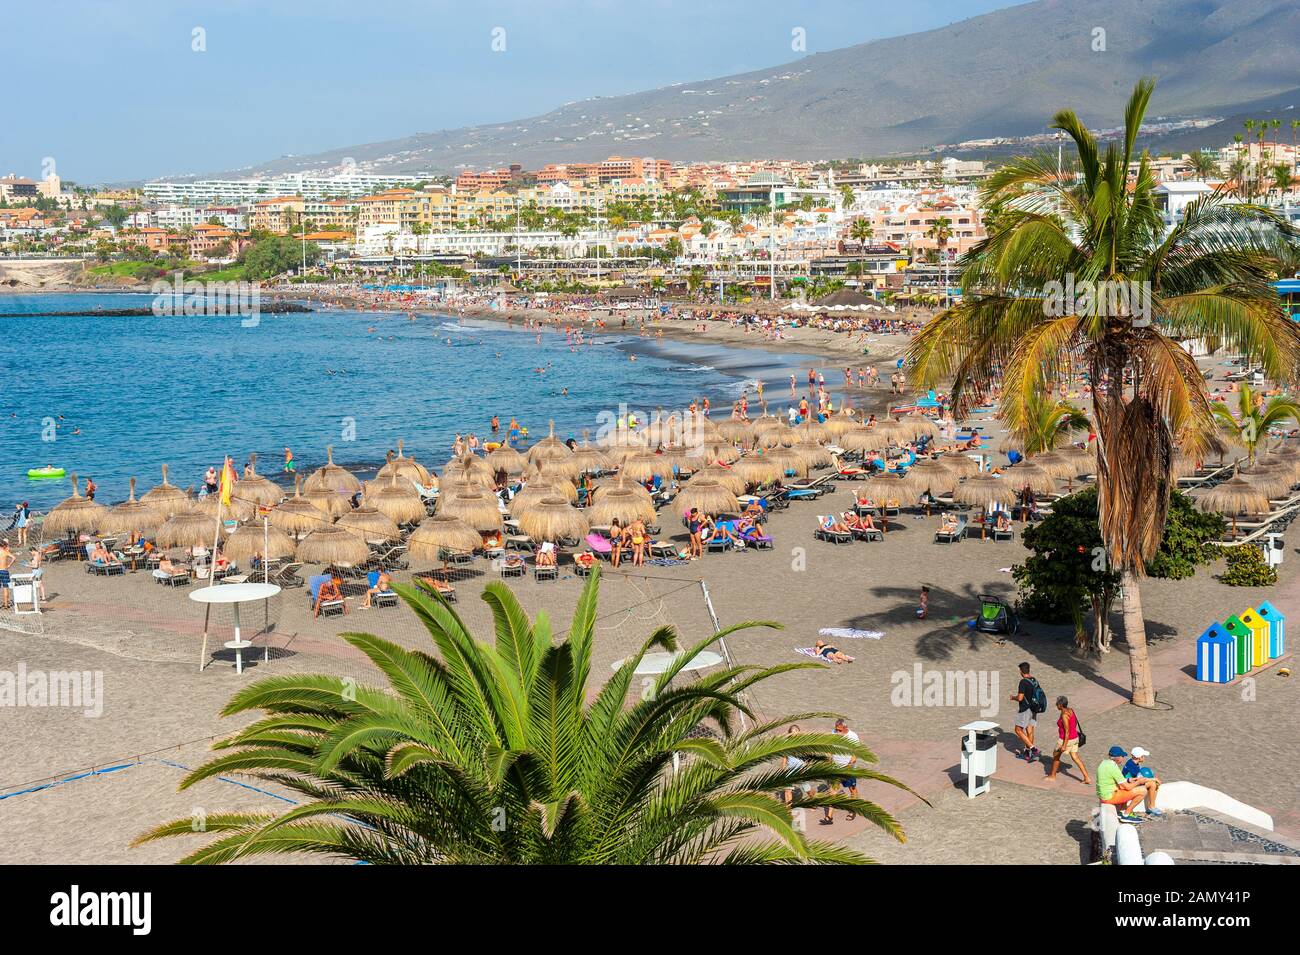 ISLAS Canarias TENERIFE, ESPAÑA - 26 Dic, 2019: Vista de la playa llamada playa de Torviscas. Una de las playas más populares para los turistas en Tenerife. Foto de stock